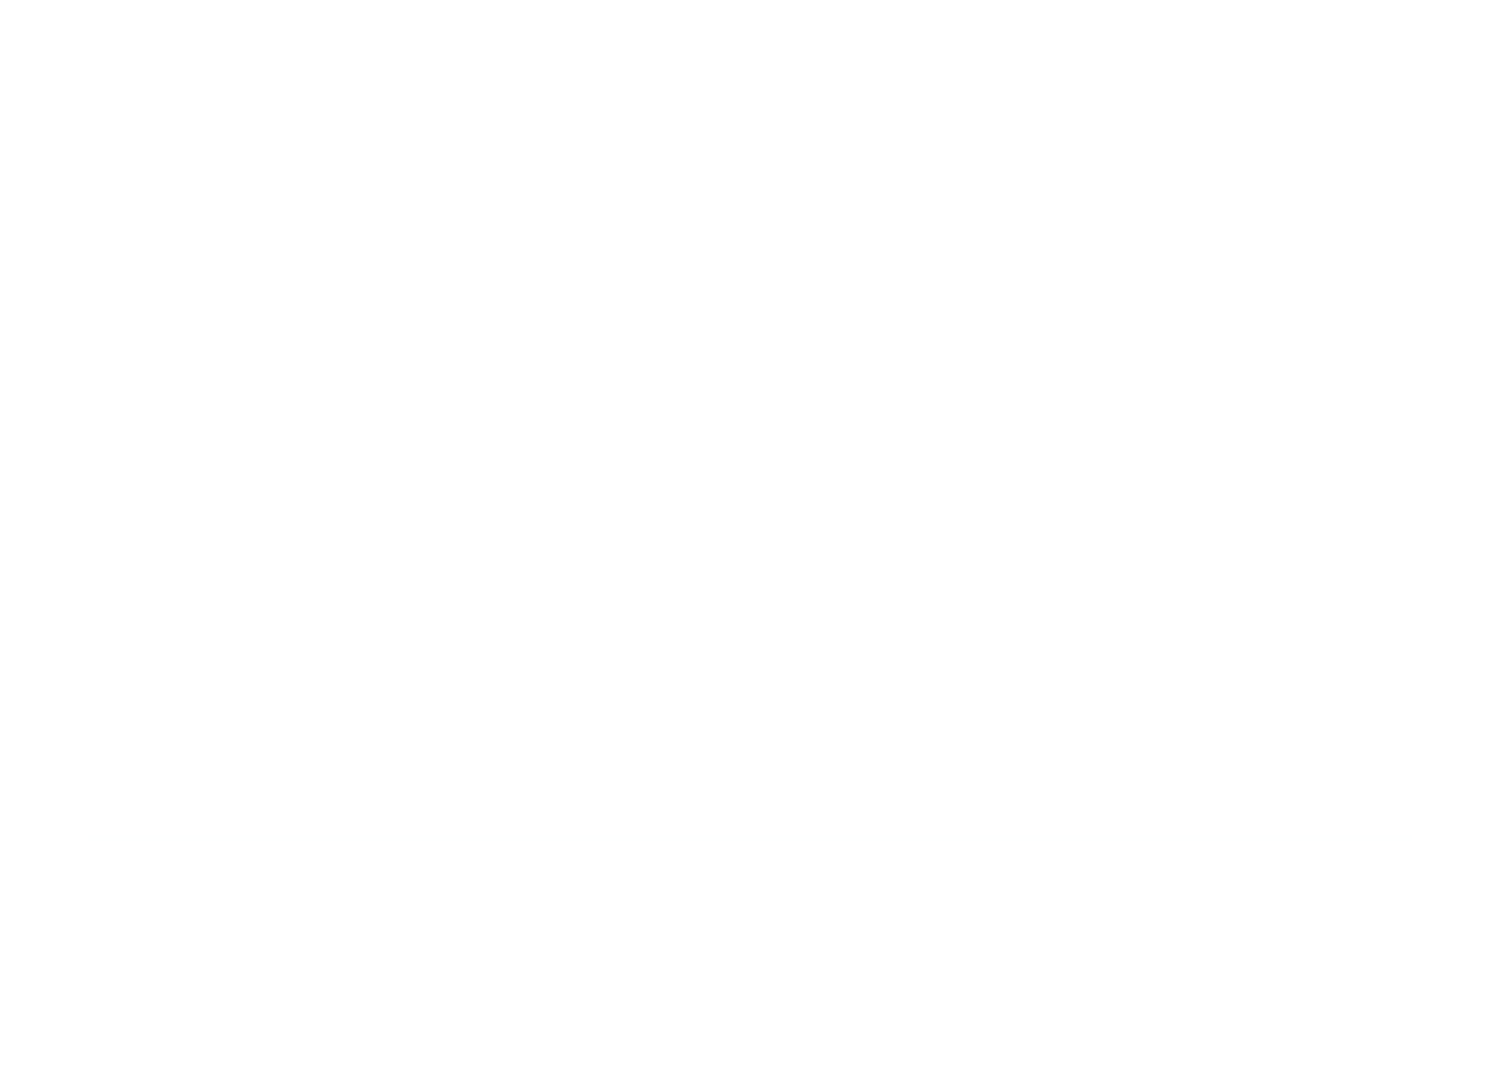 Steve MacDougall Real Estate